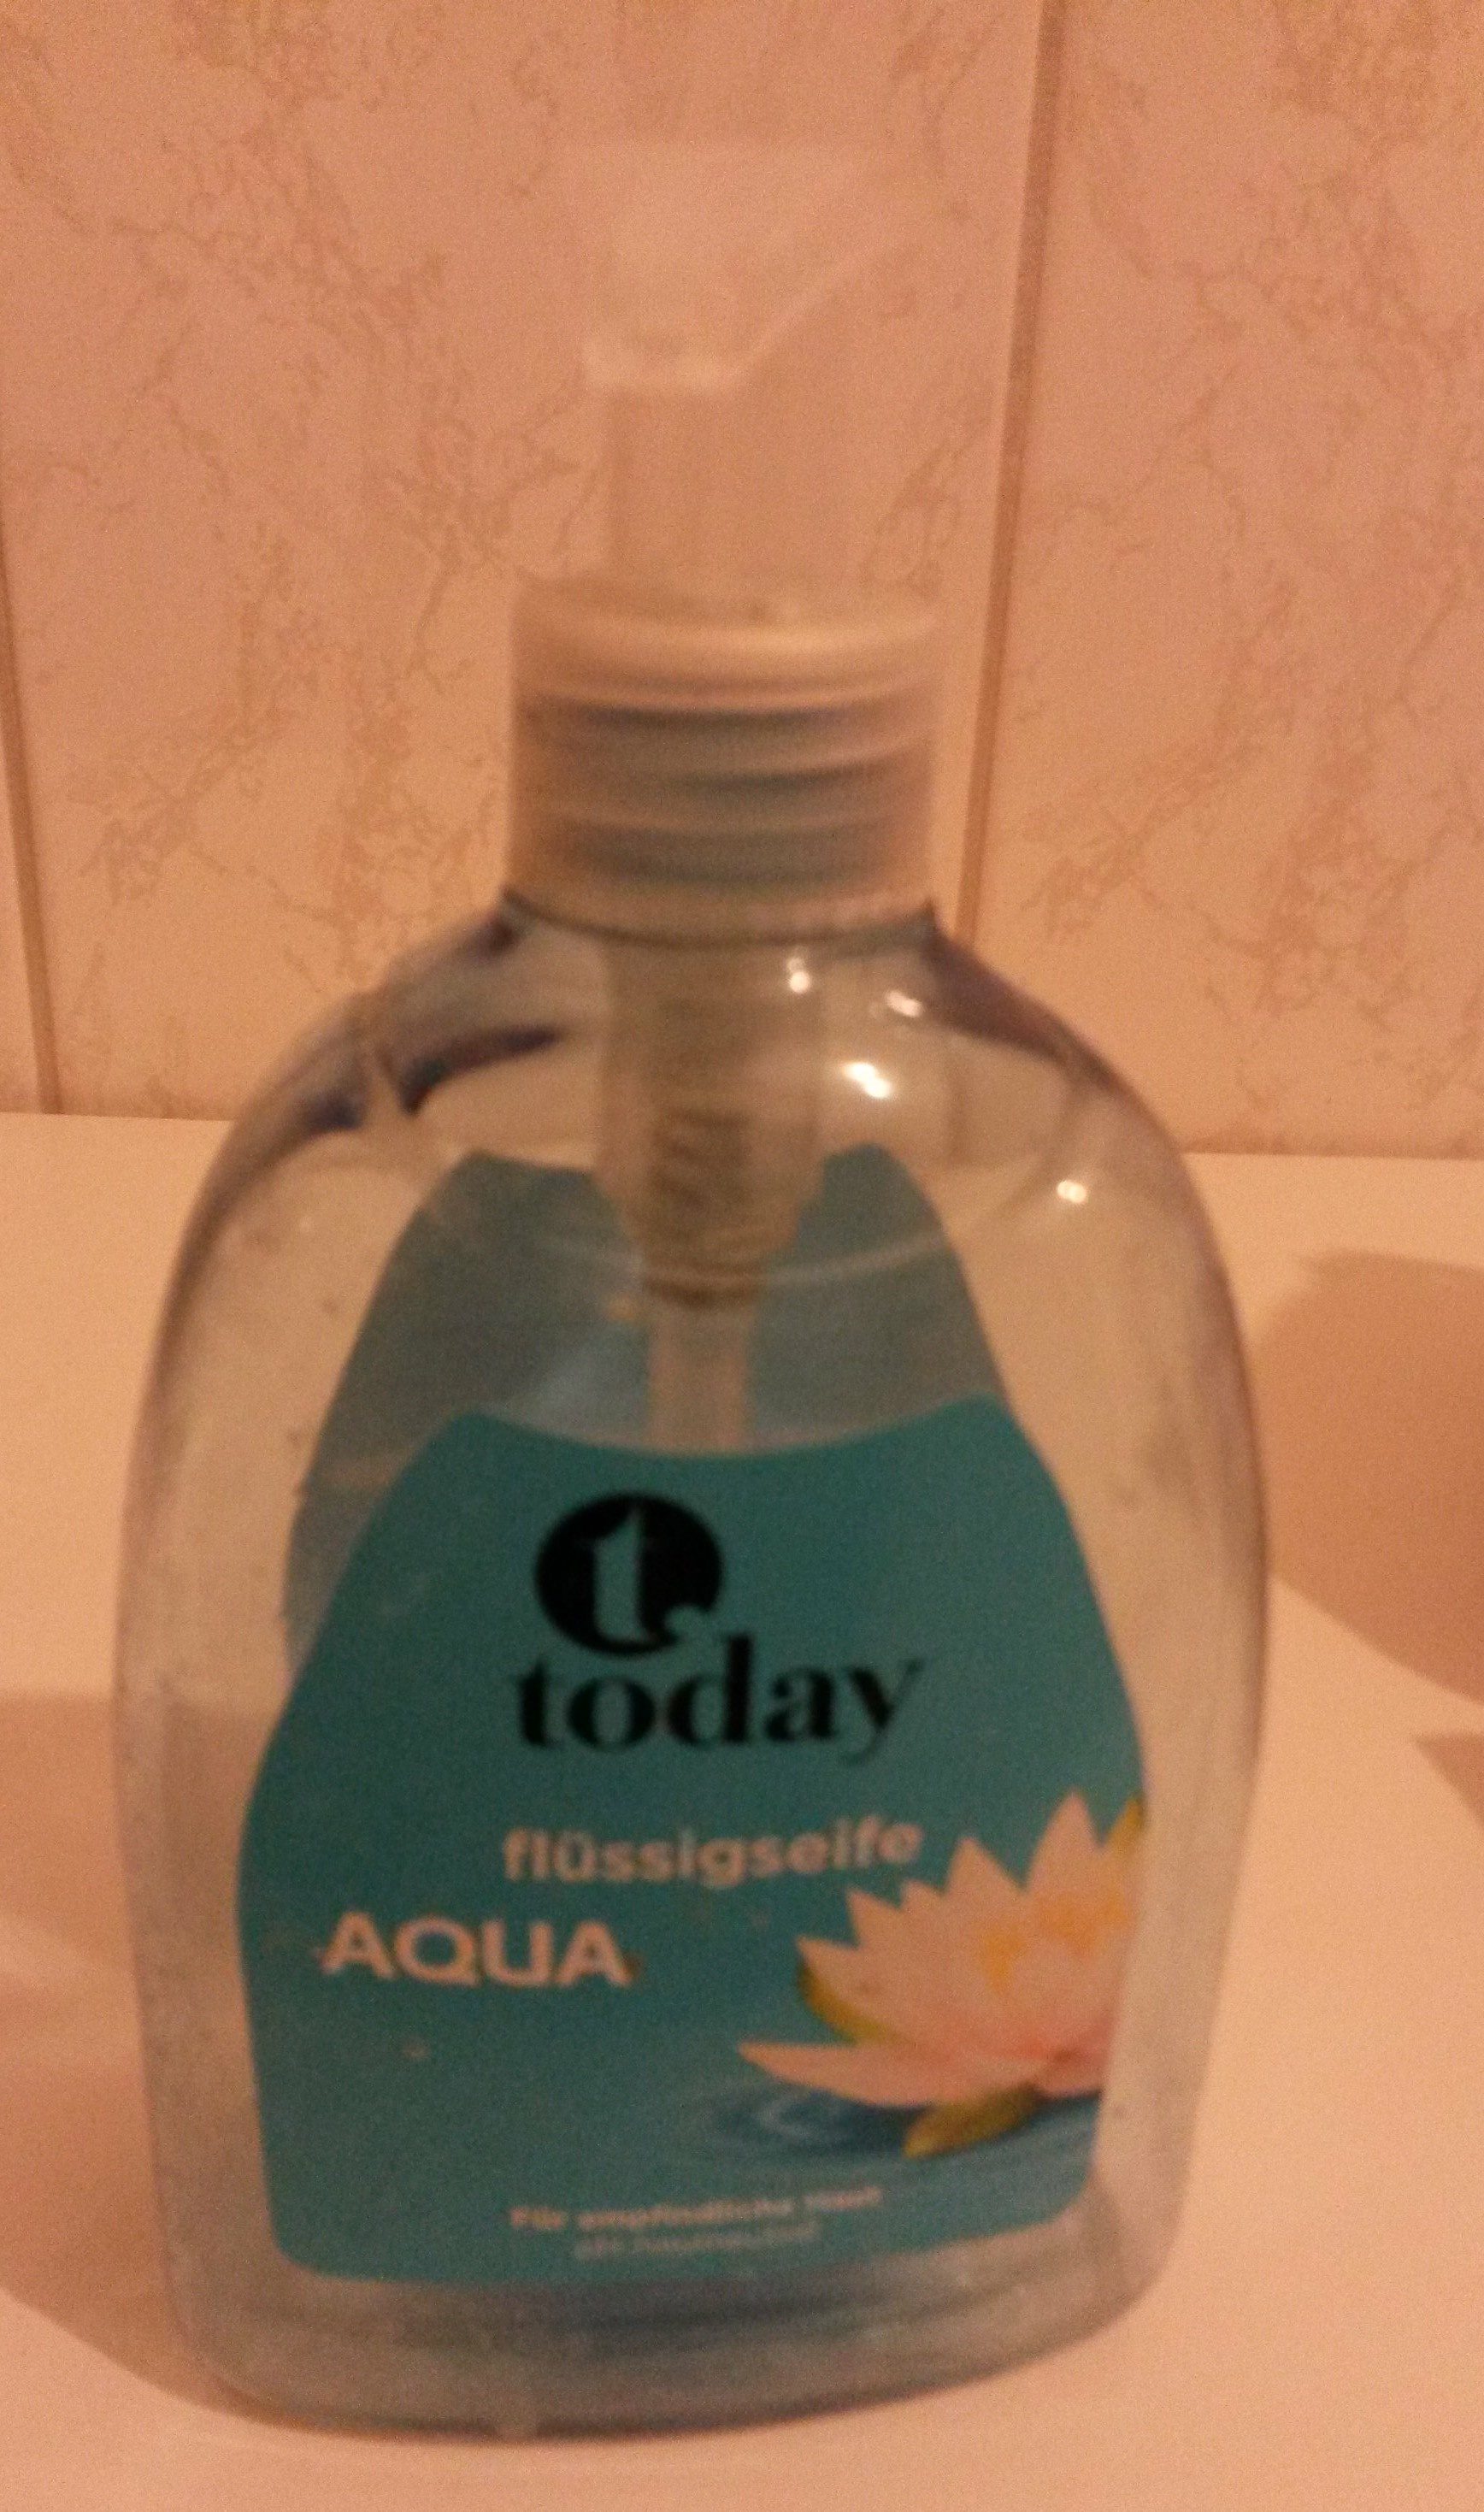 today Flüssigseife aqua - Produkt - de